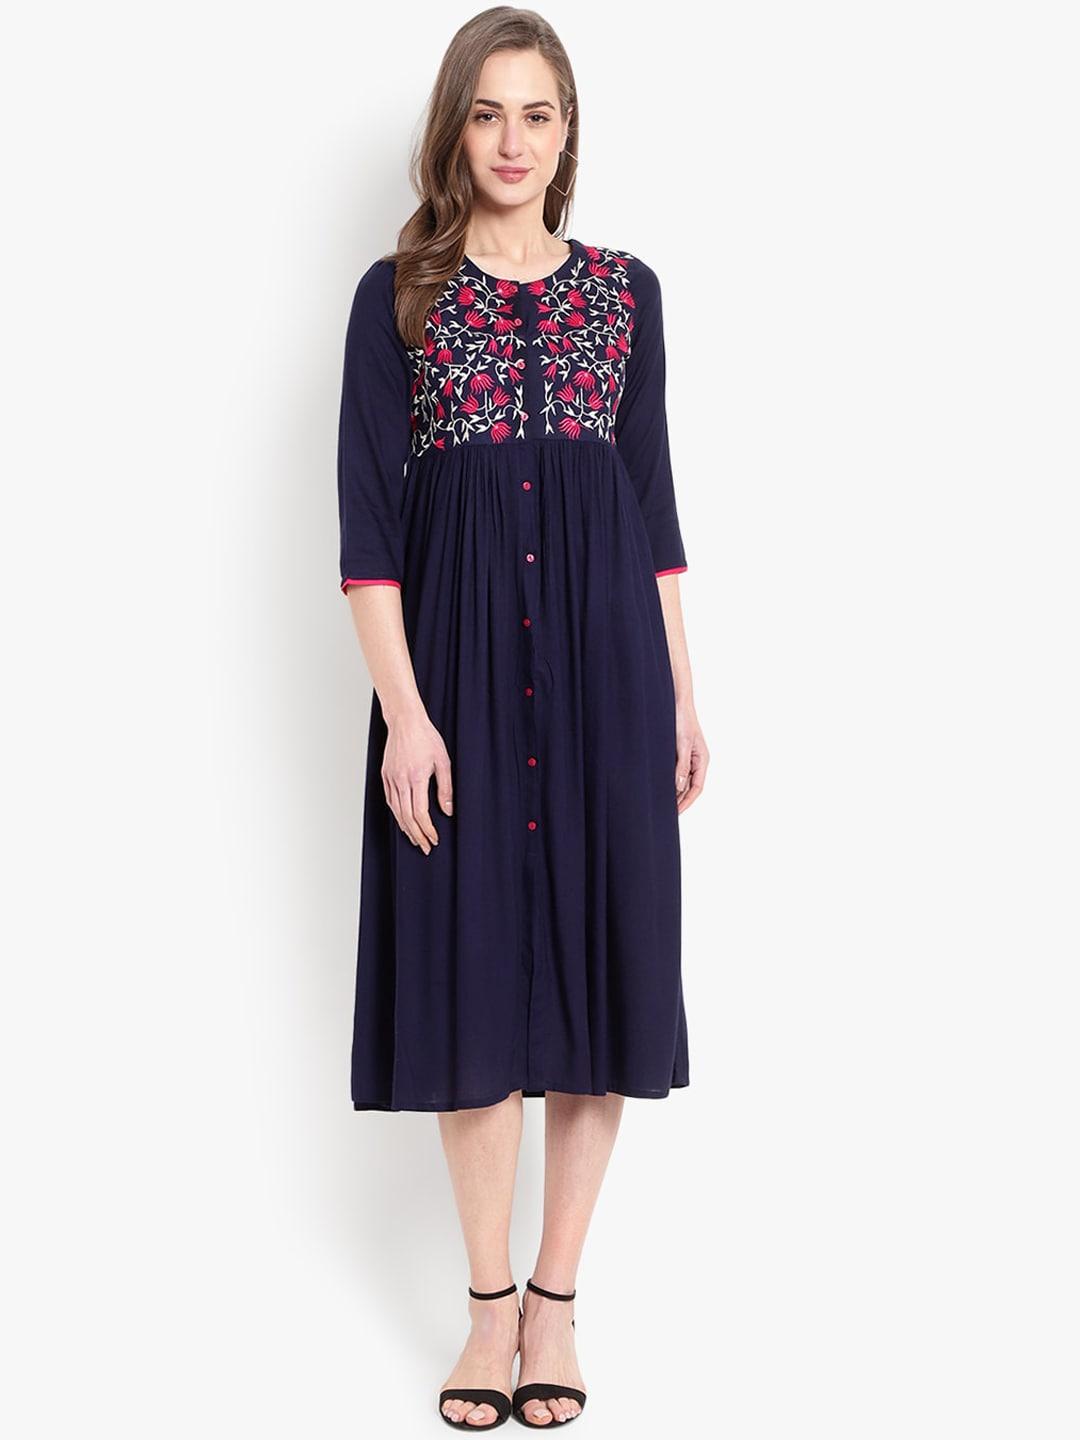 ashlee-blue-floral-embroidered-dress